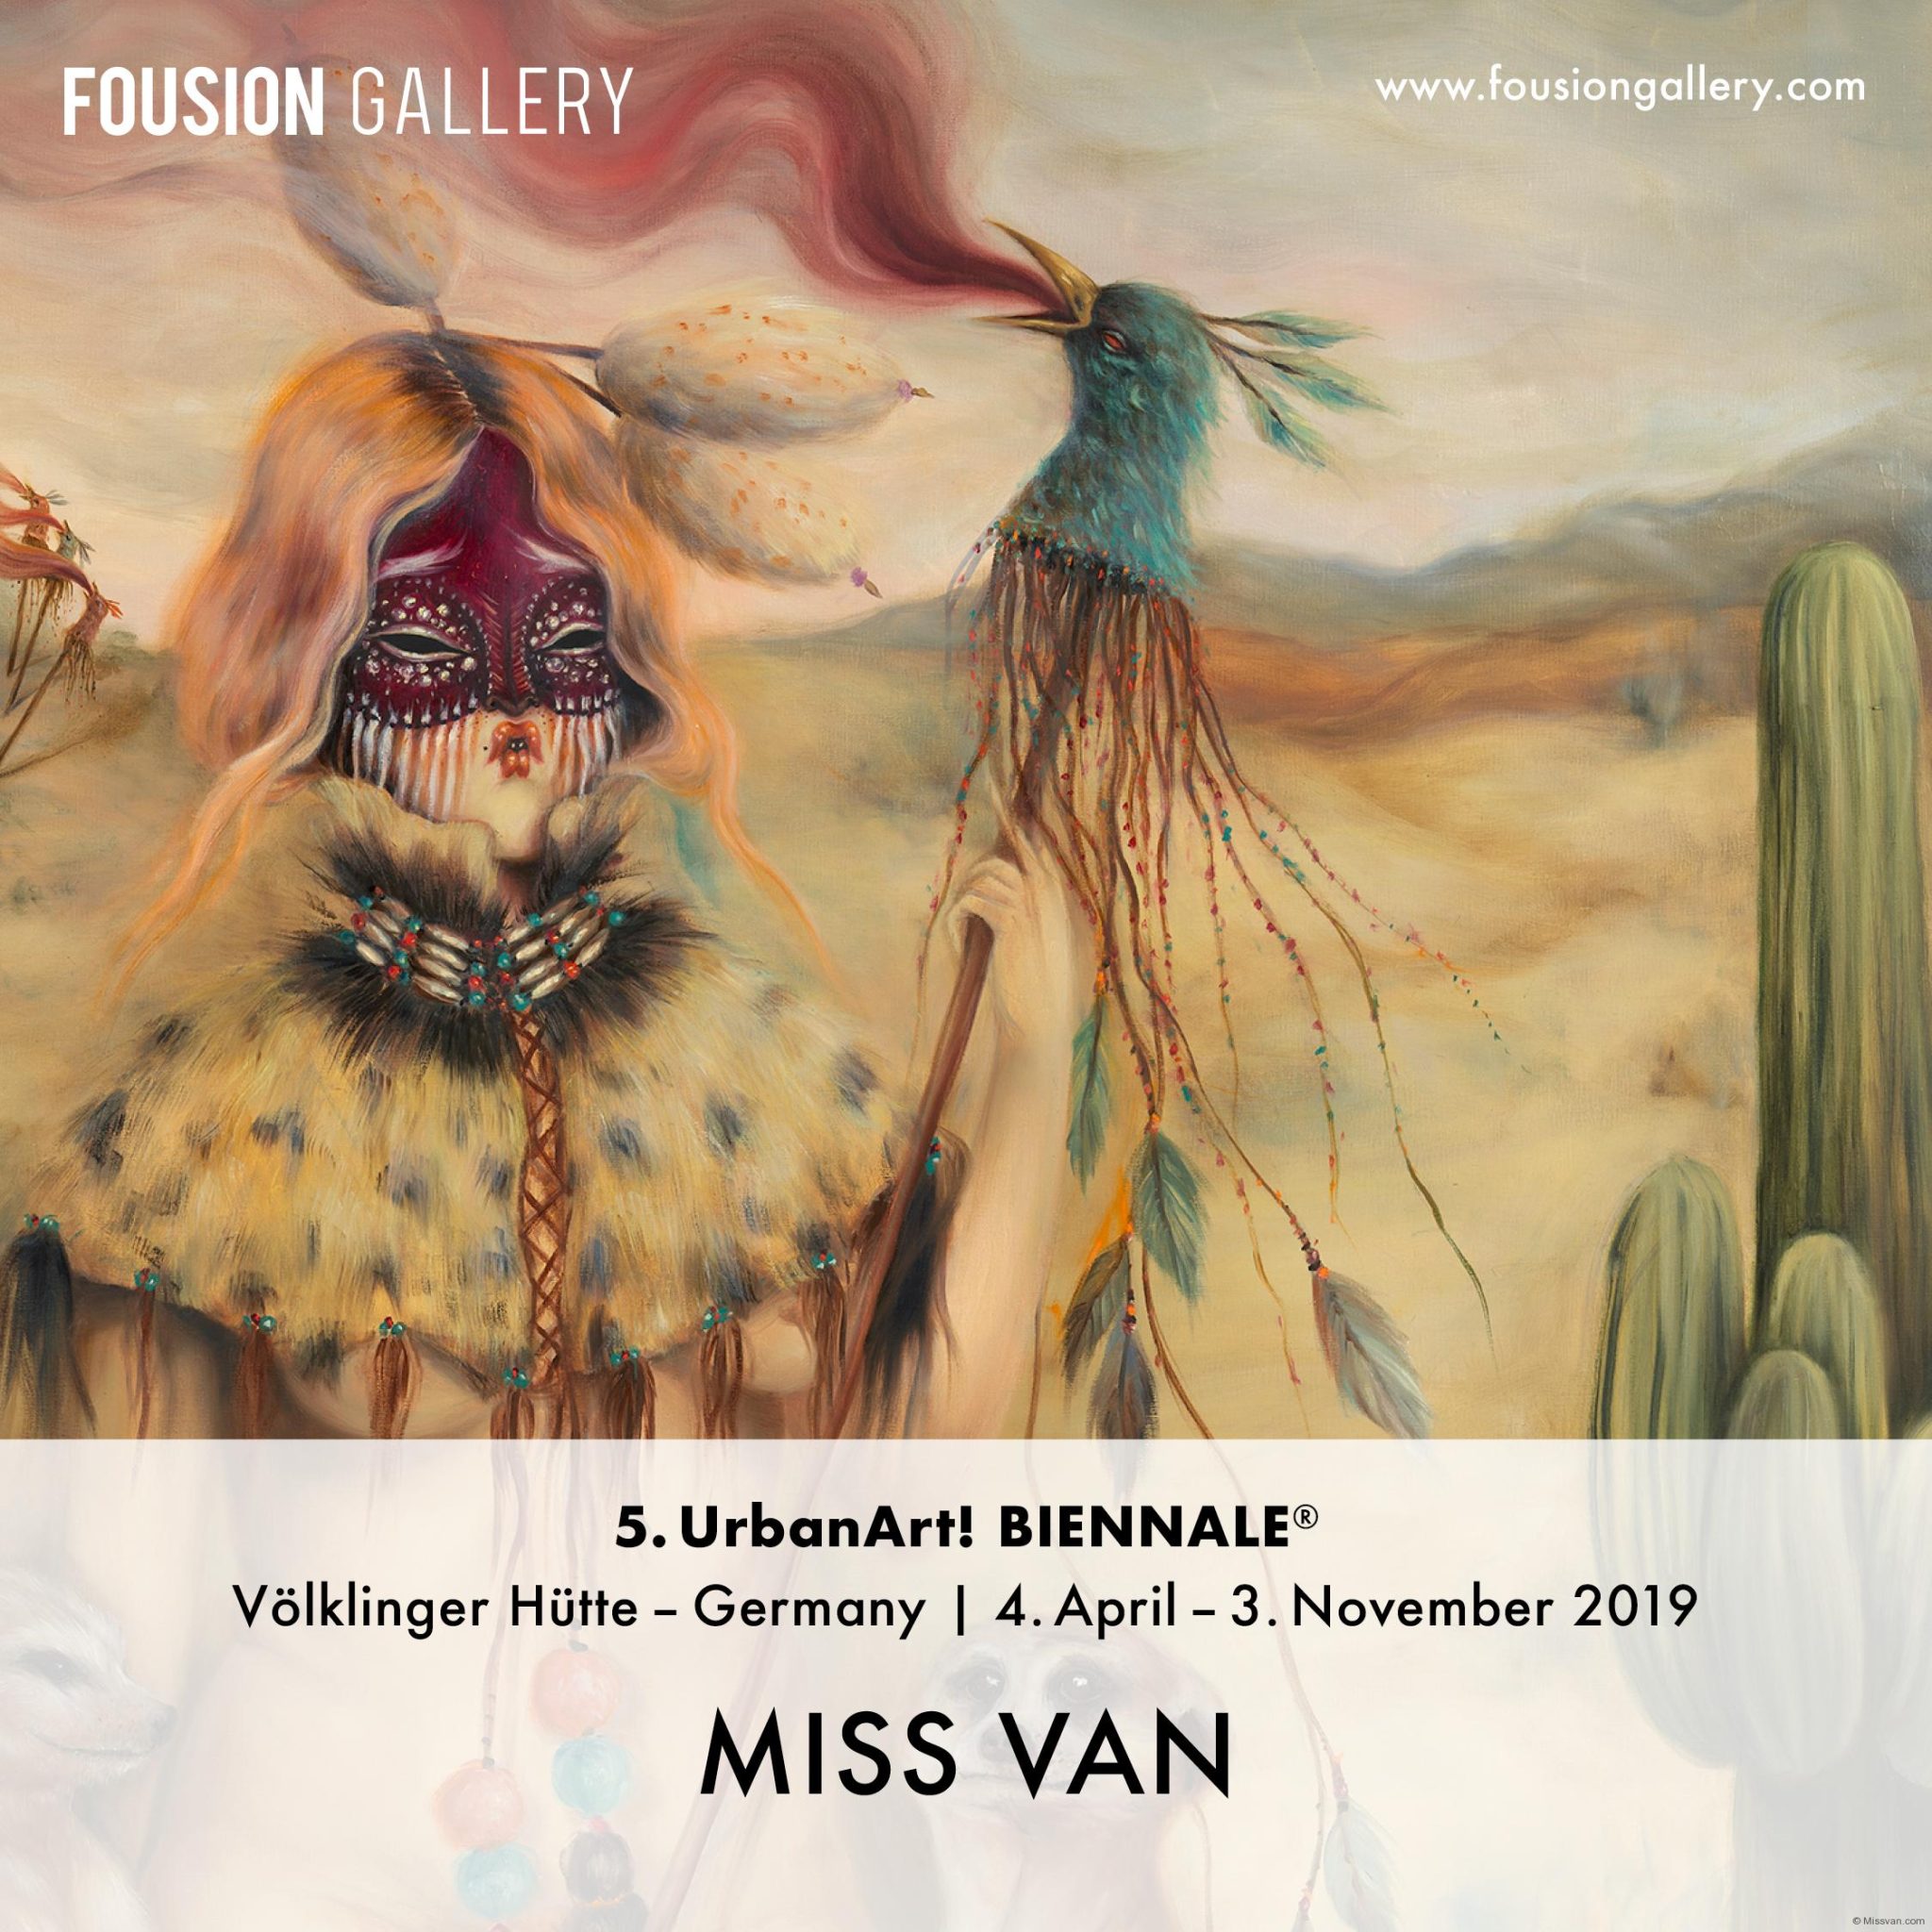 UrbanArt Biennale 2019 - Fousion Gallery - Miss Van